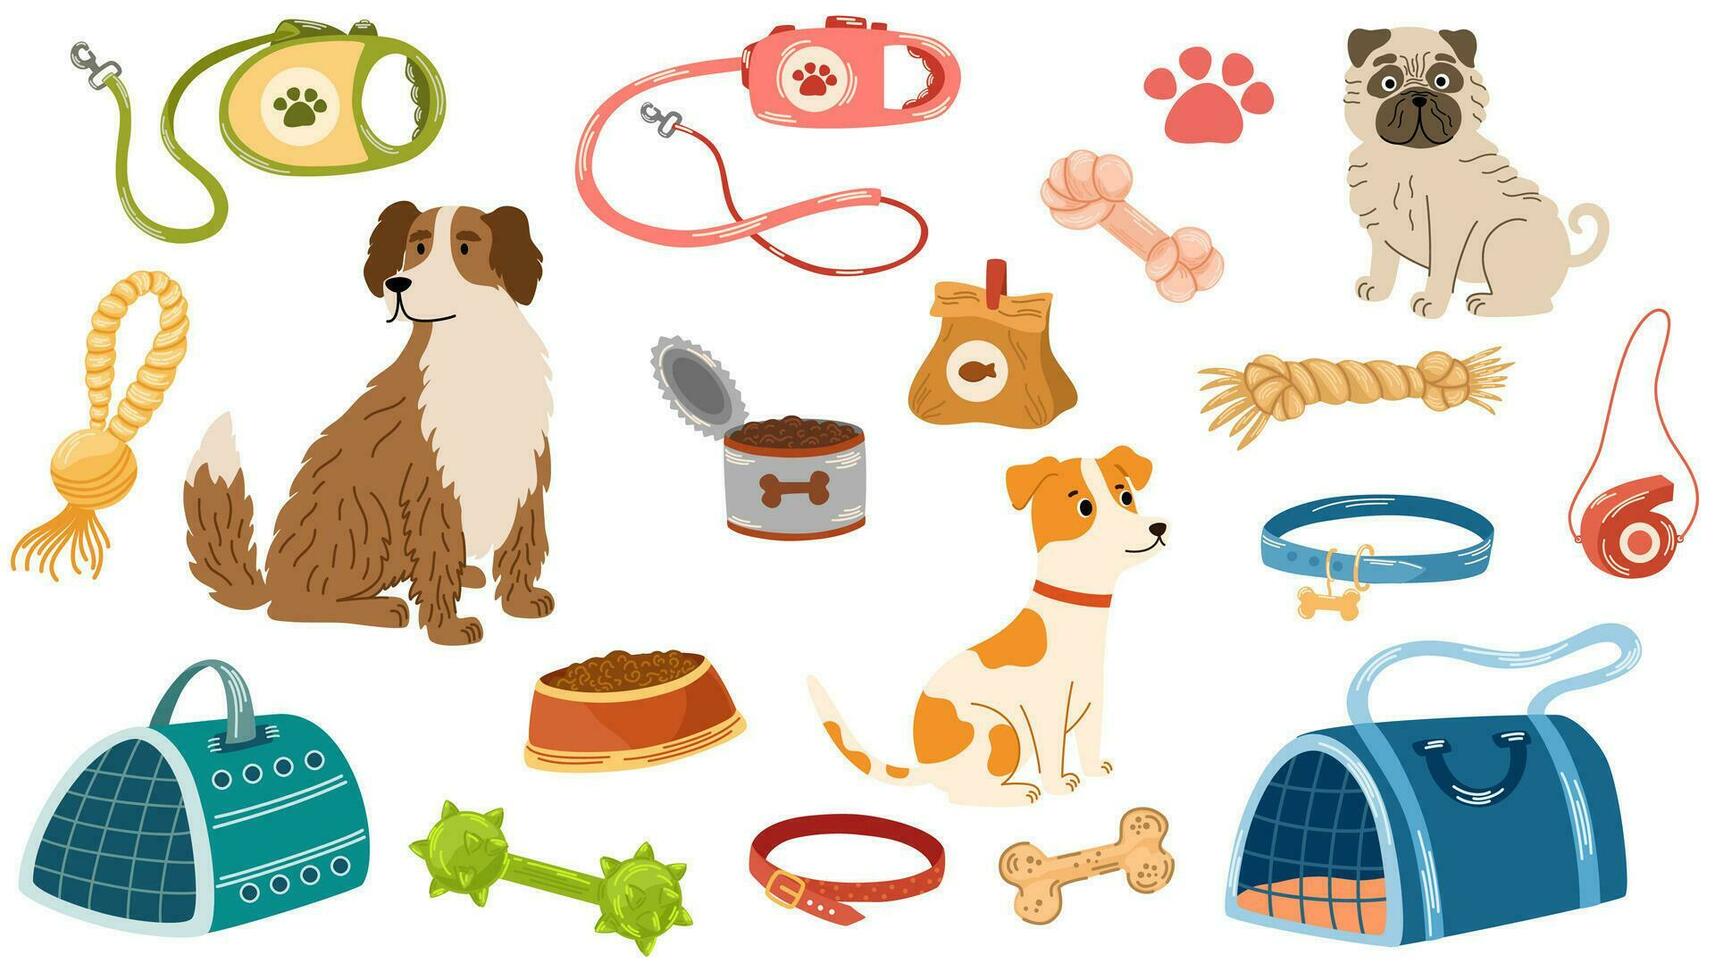 huisdier winkel assortiment, honden accessoires. reeks van op te slaan levering items voor huiselijk huisdieren, bedden, dier voedsel, speelgoed, vervoer, halsbanden en voer. honden van verschillend rassen. vector hand- trek illustratie.